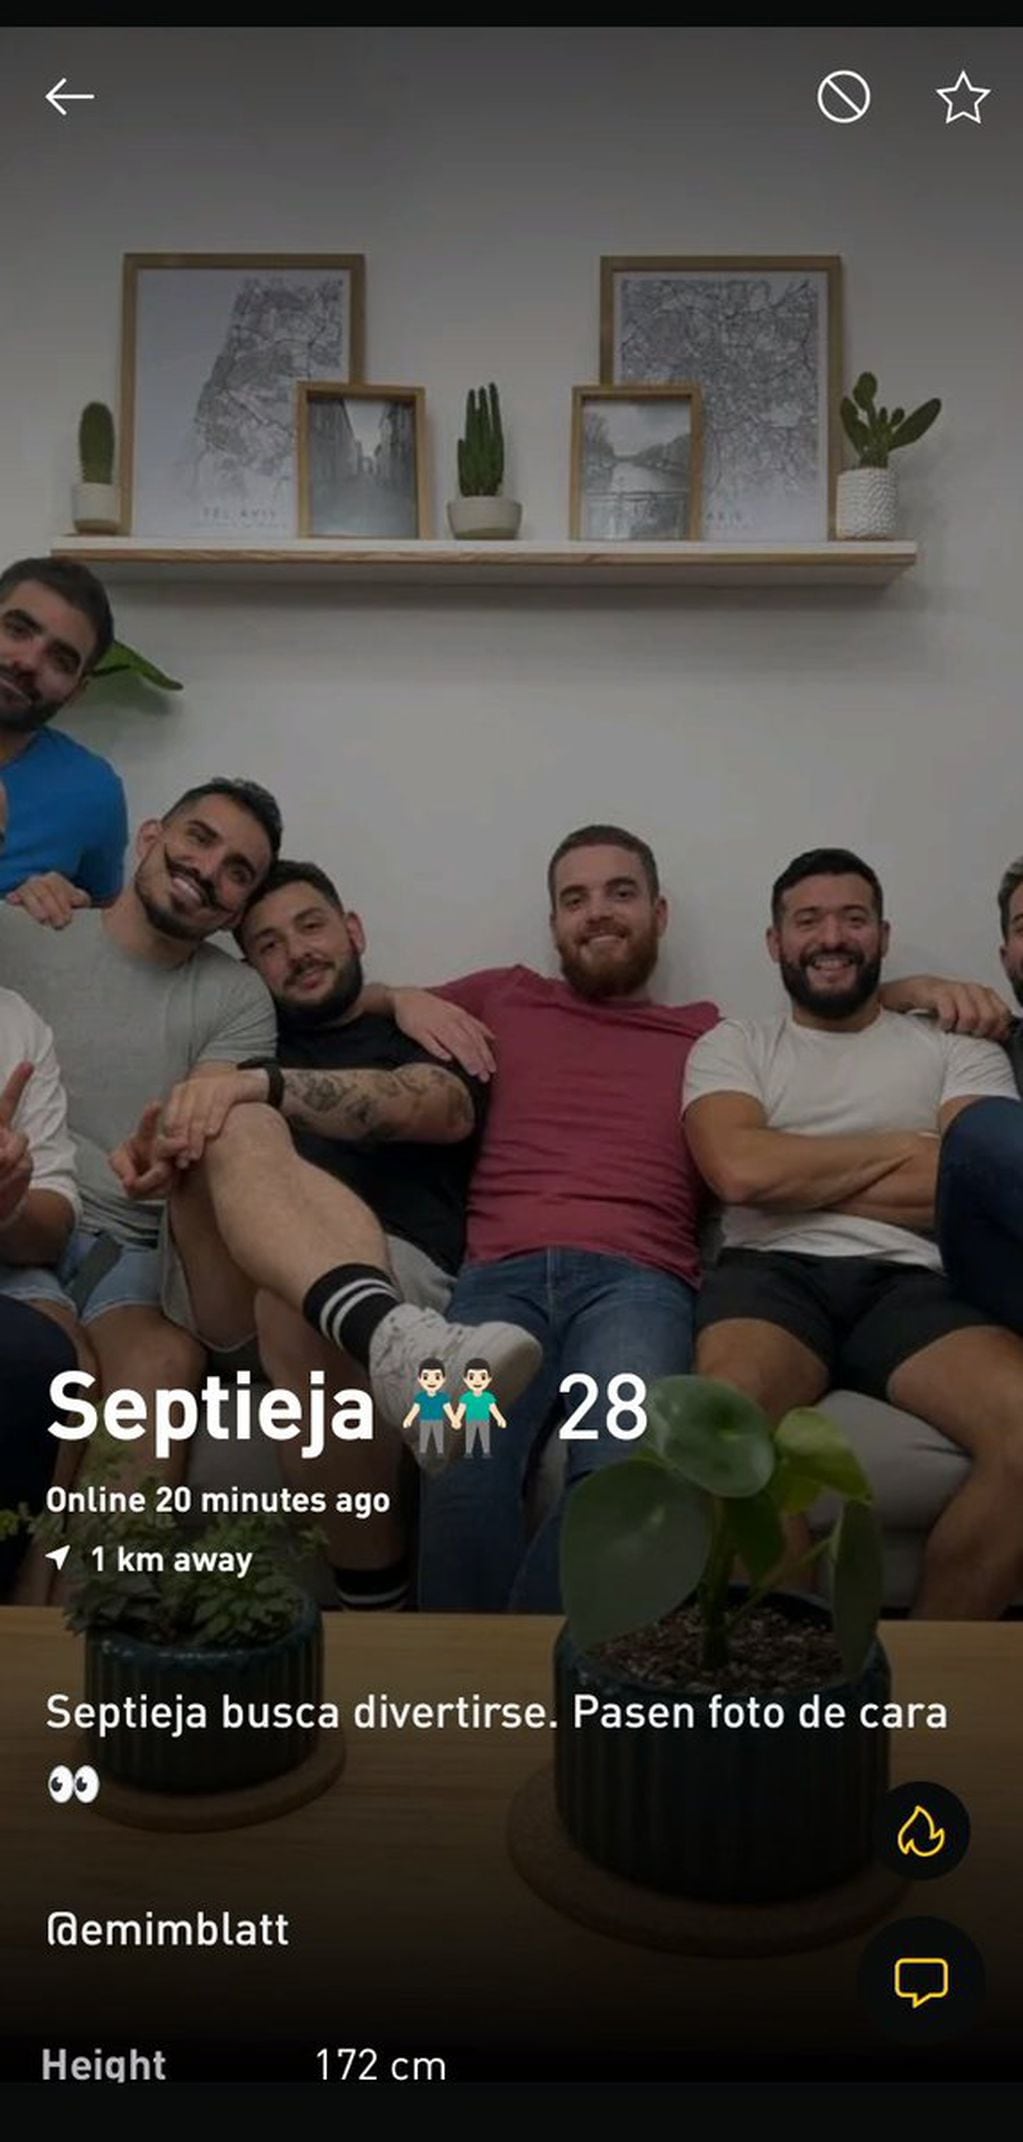 "Septieja" (pareja de 7 personas) que busca divertirse. La publicación generó cientos de comentarios y memes en las redes sociales.